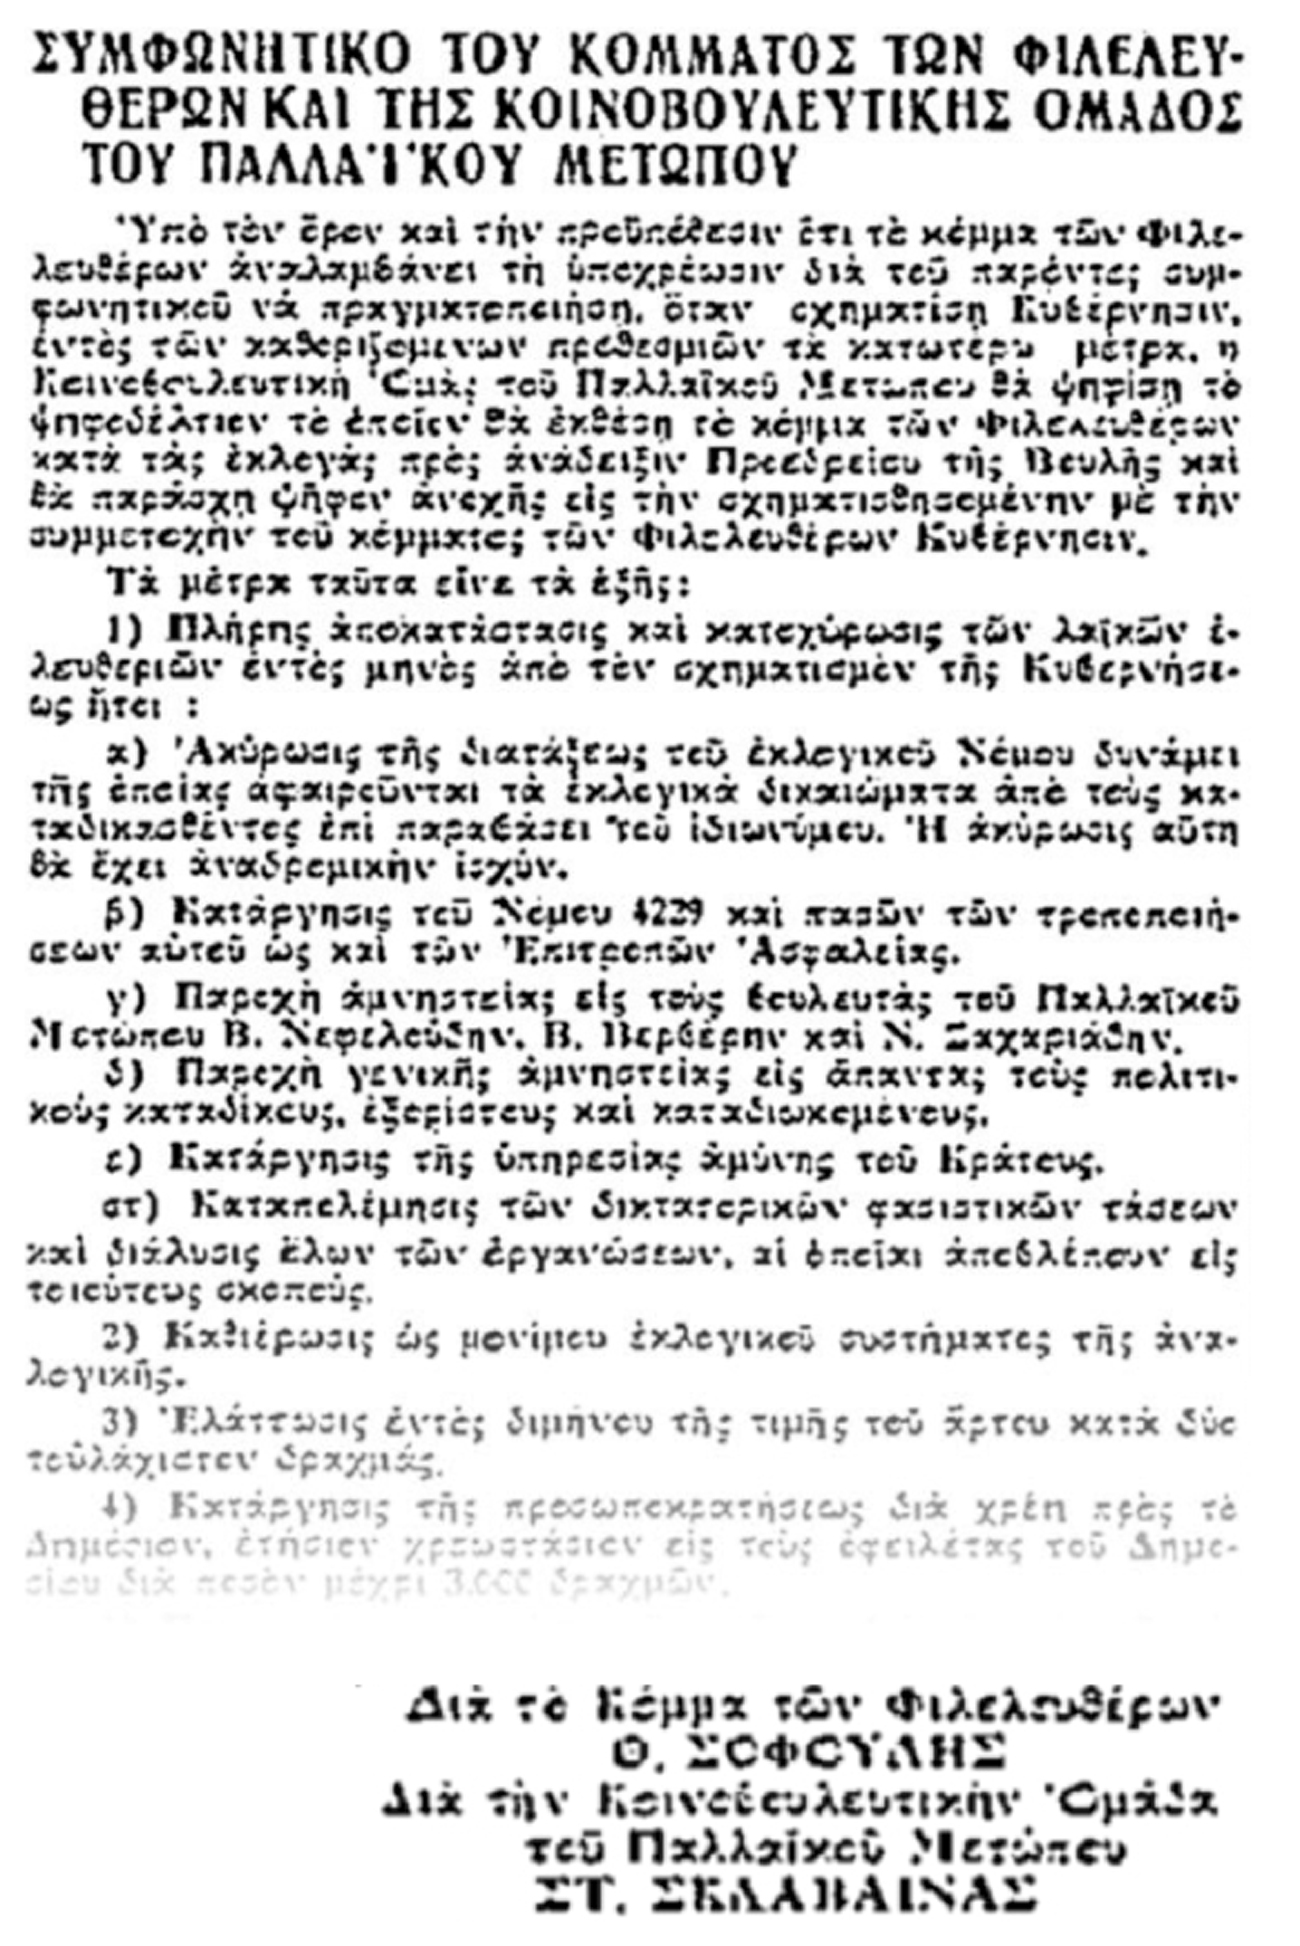 Ο «Ριζοσπάστης» στις 3 Απρίλη 1936 δημοσιεύει το Σύμφωνο «Παλλαϊκού Μετώπου» - Φιλελευθέρων, μετά από την αθέτηση της υπόσχεσης του Θεμ. Σοφούλη να γίνει πρωθυπουργός.